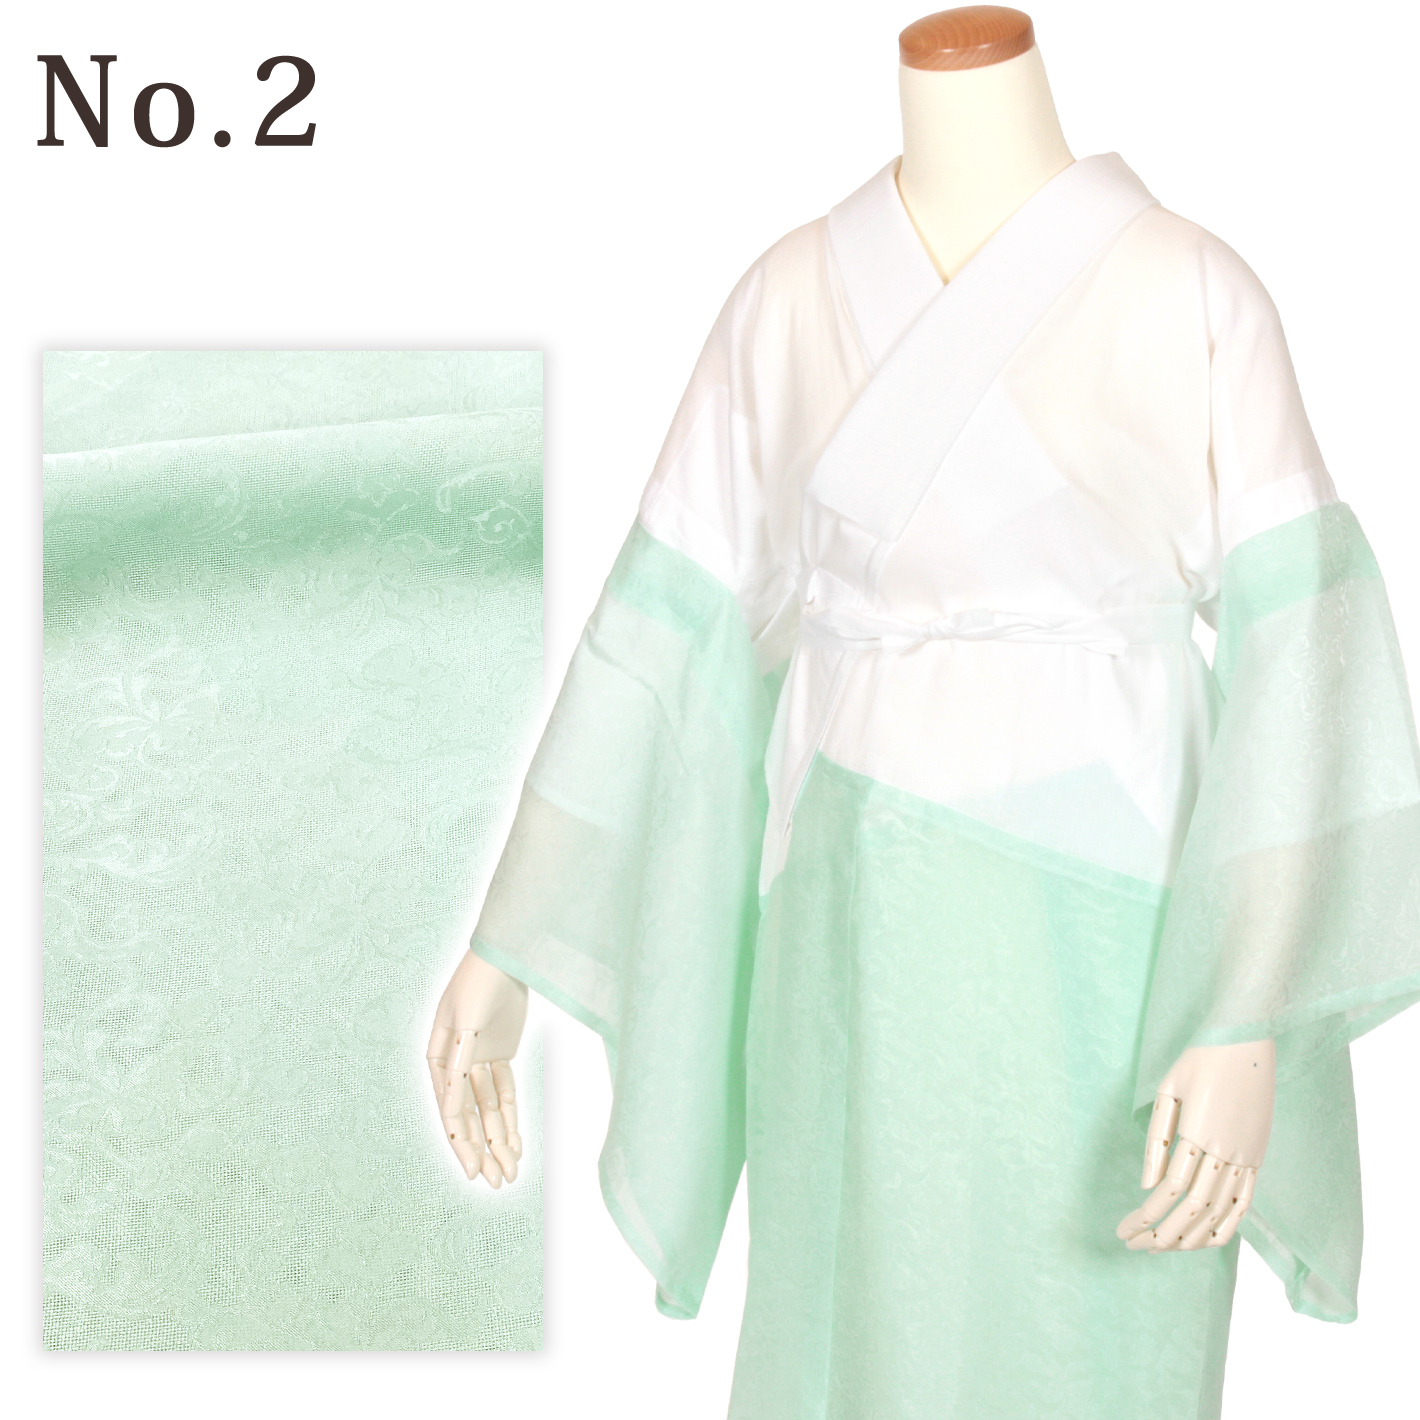 きらっく 夏 プレミアム Premium 長襦袢 洗える すなお 仕立て上がり 襦袢 うそつき 日本製 衿秀 き楽っく 千花 ローズカラー 着物、浴衣 